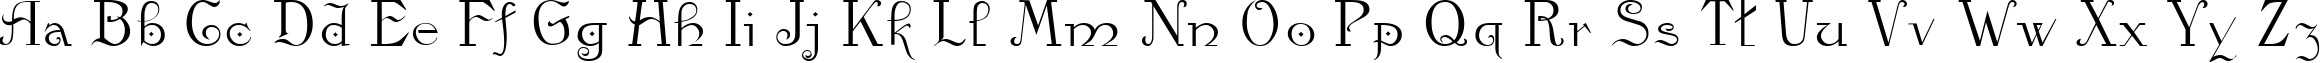 Пример написания английского алфавита шрифтом Kamelia